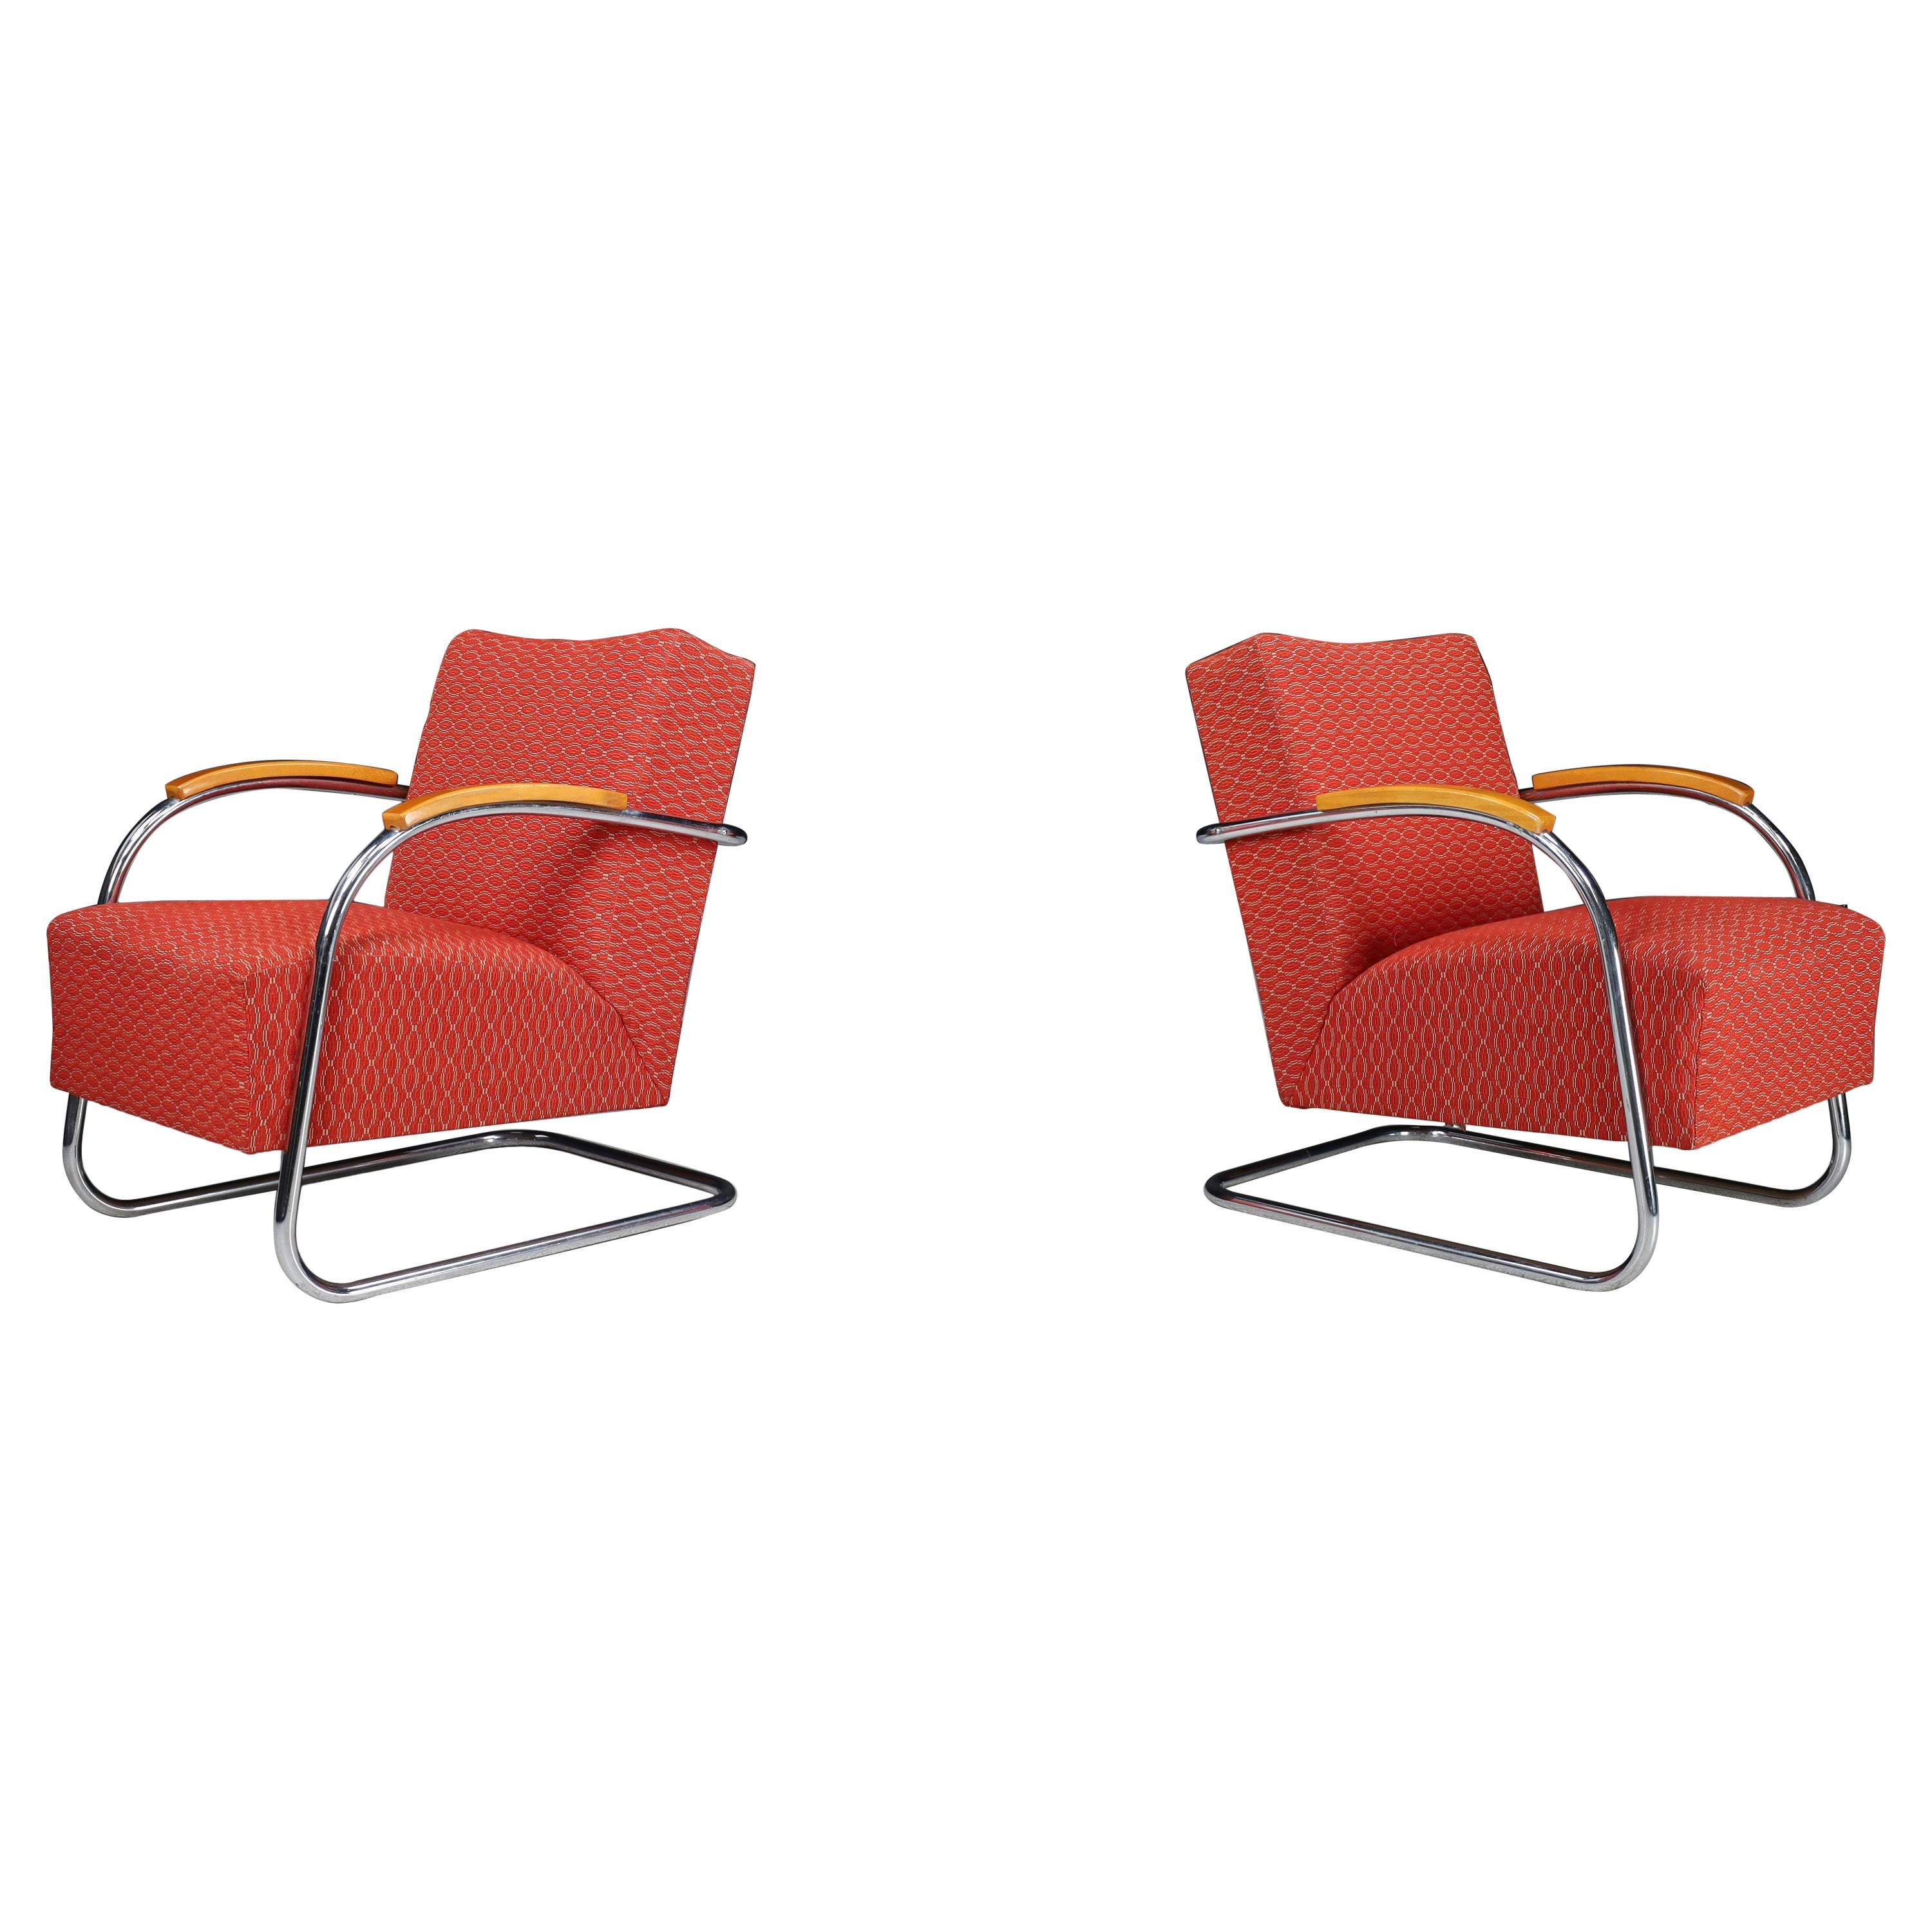 Mucke & Melder Bauhaus Original Upholstered Armchairs, Czech Republic 1930s   For Sale